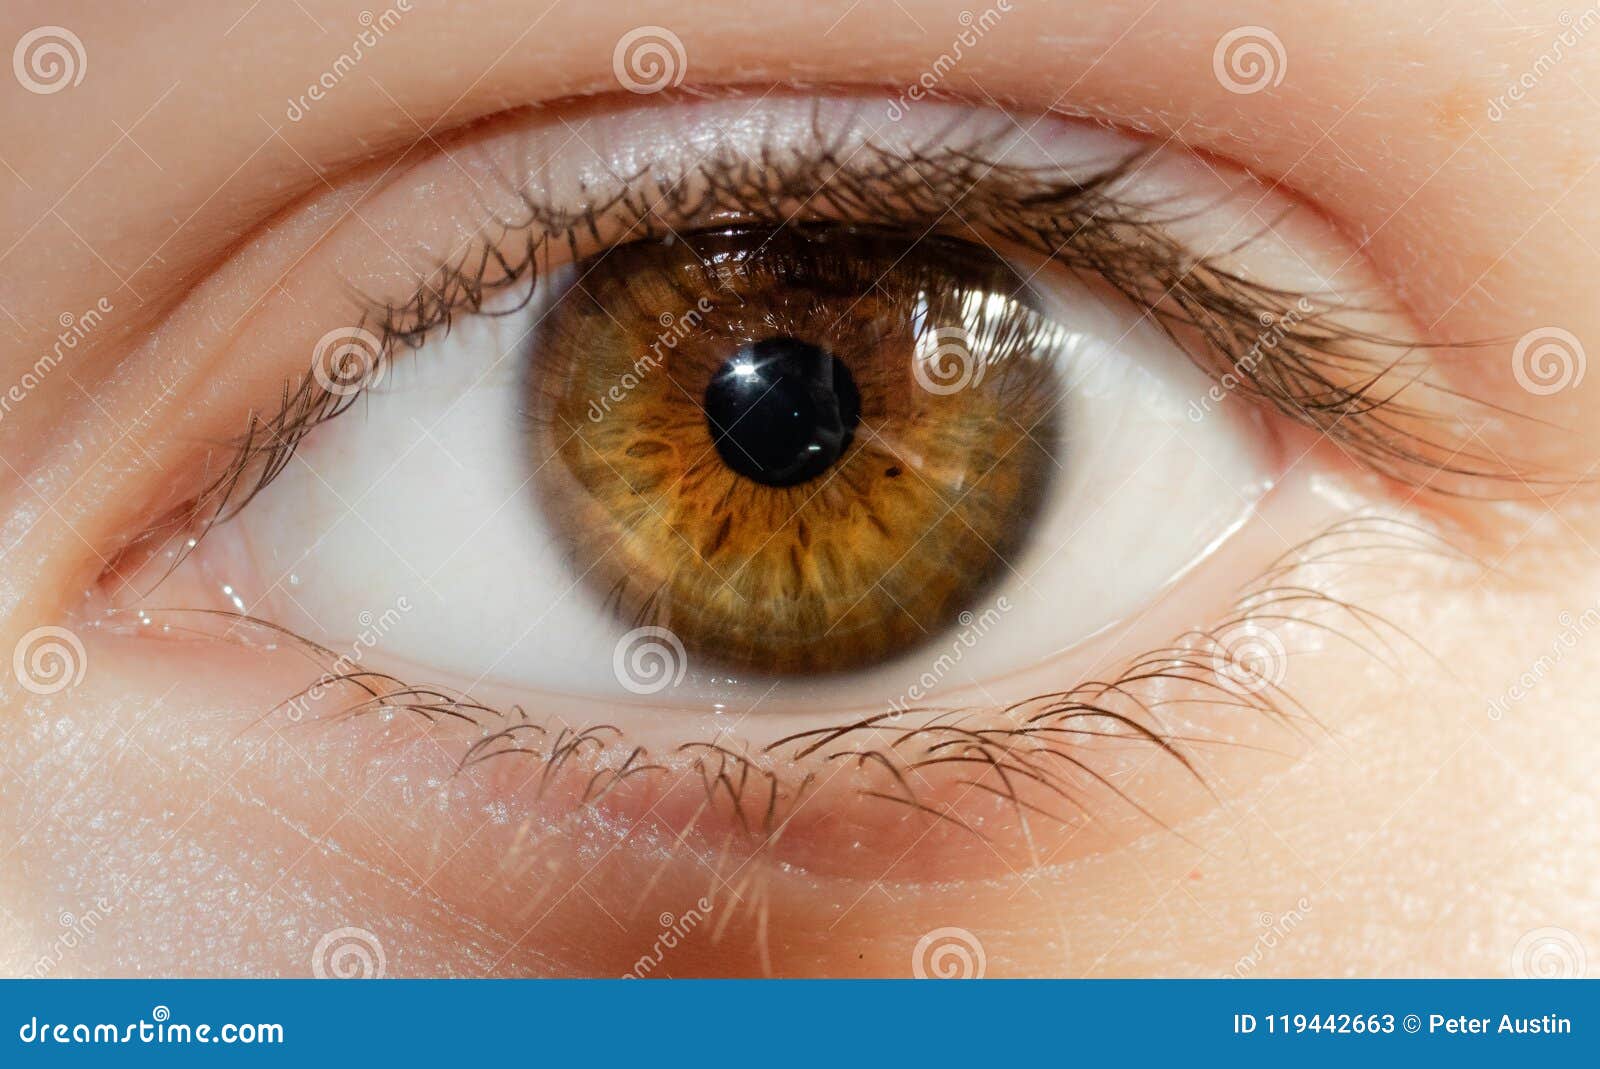 a beautiful hazel eye close up